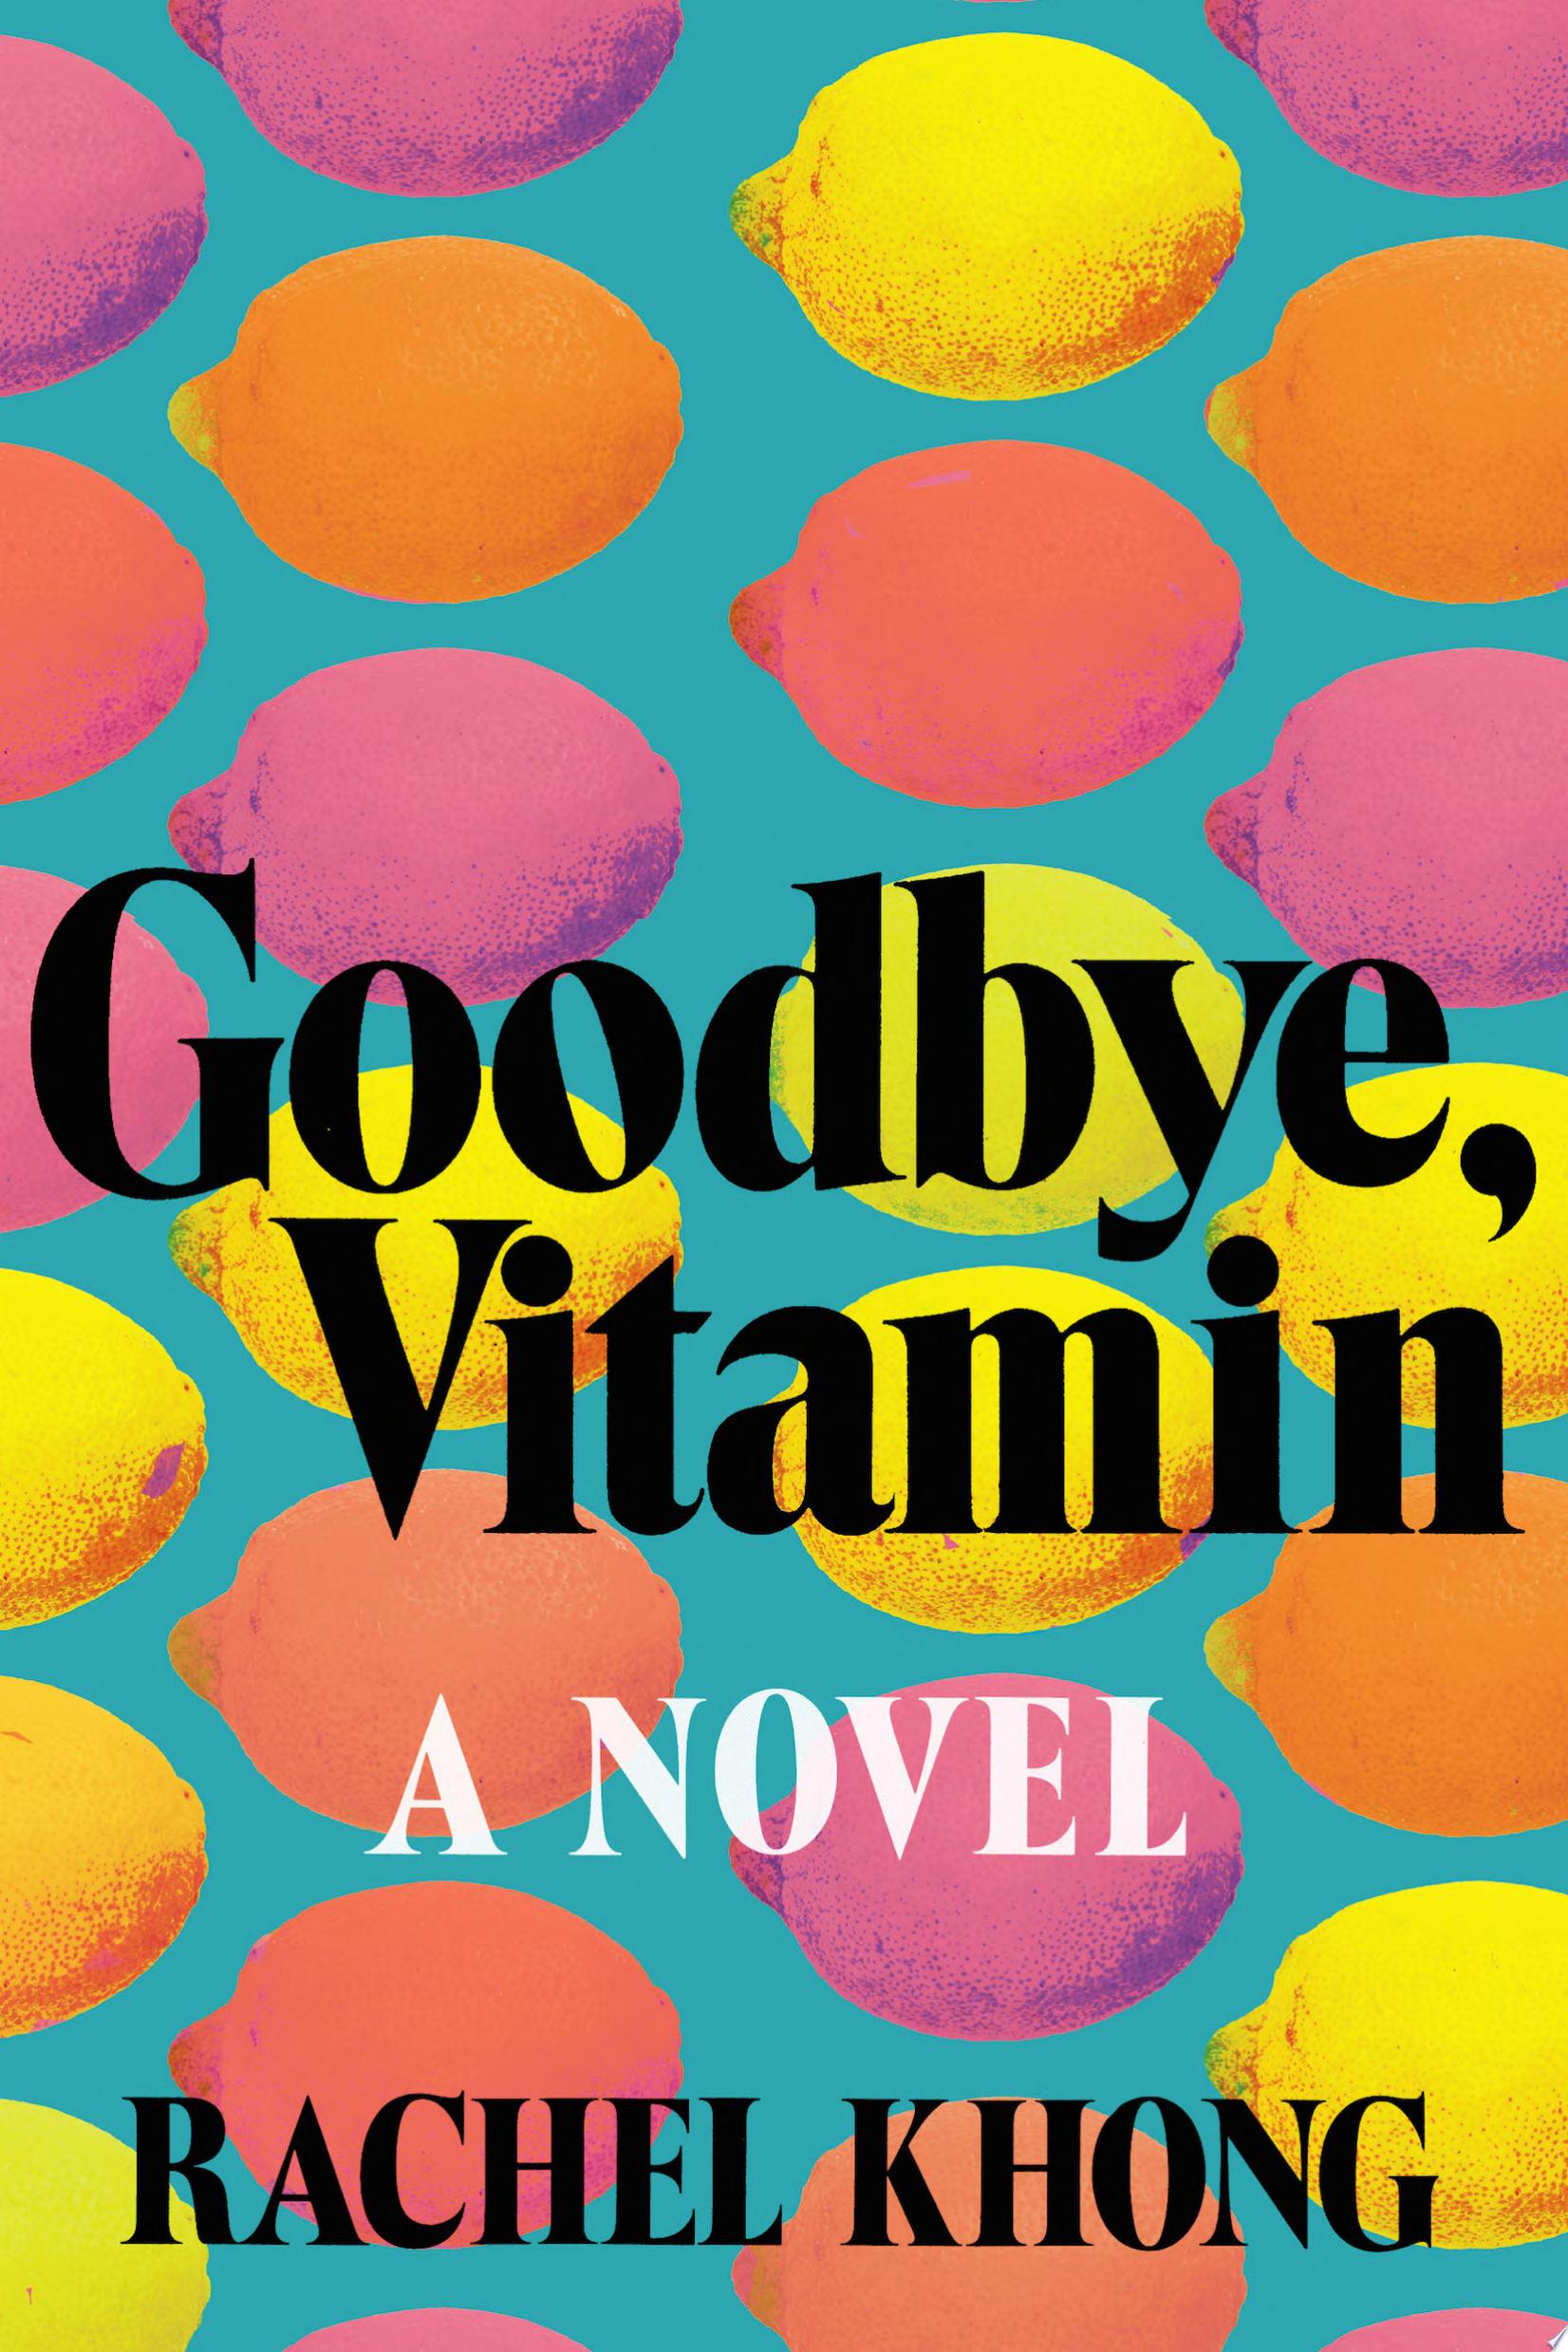 Image for "Goodbye, Vitamin"